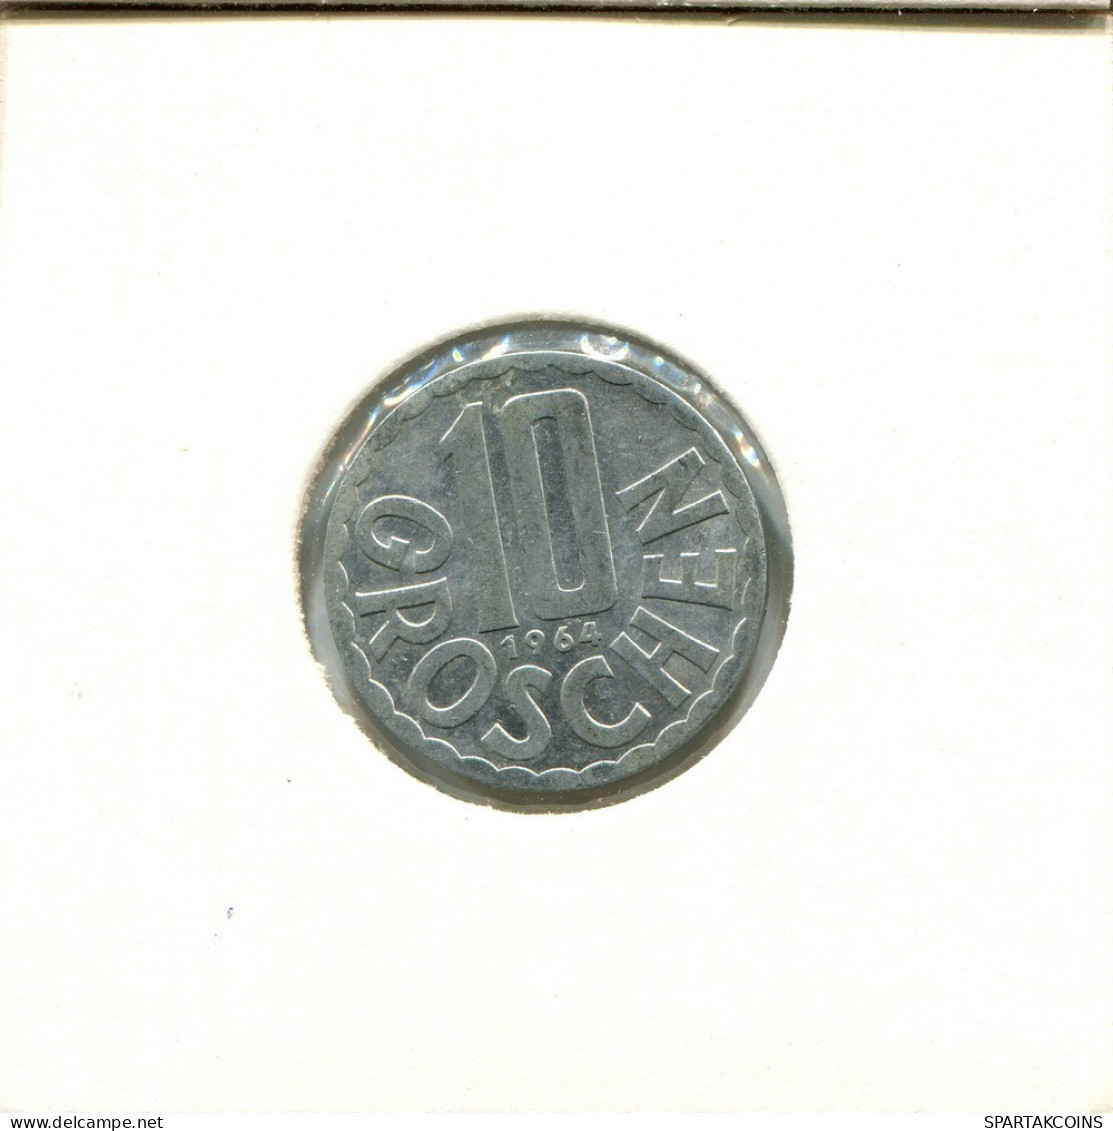 10 GROSCHEN 1964 AUSTRIA Moneda #BA057.E.A - Oostenrijk